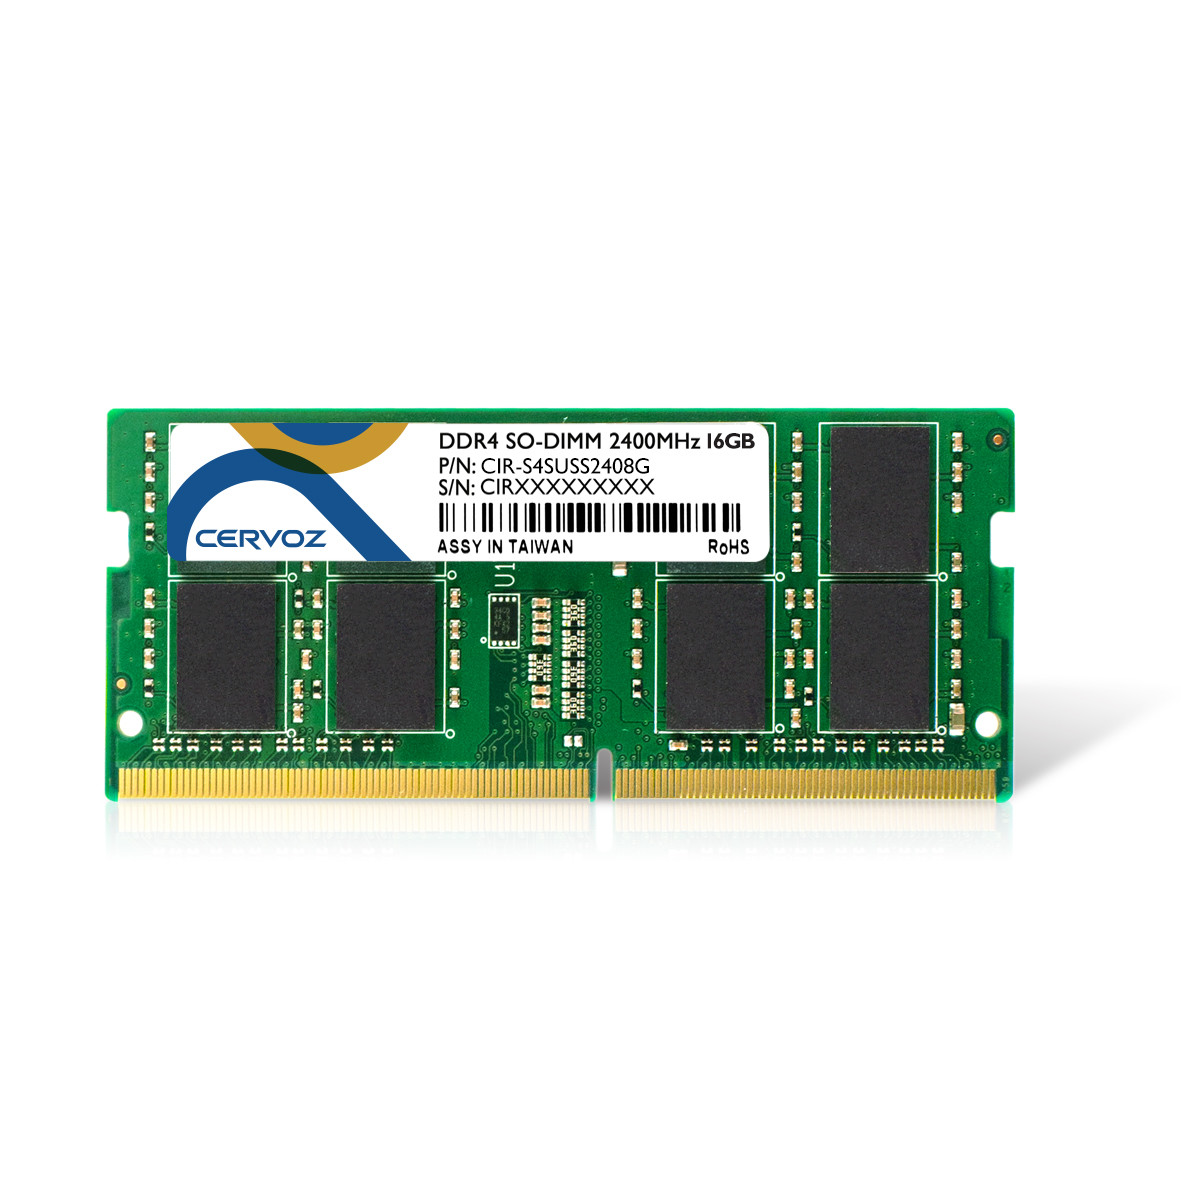 8GB Industrial DDR4 SO-DIMM 2400MHz